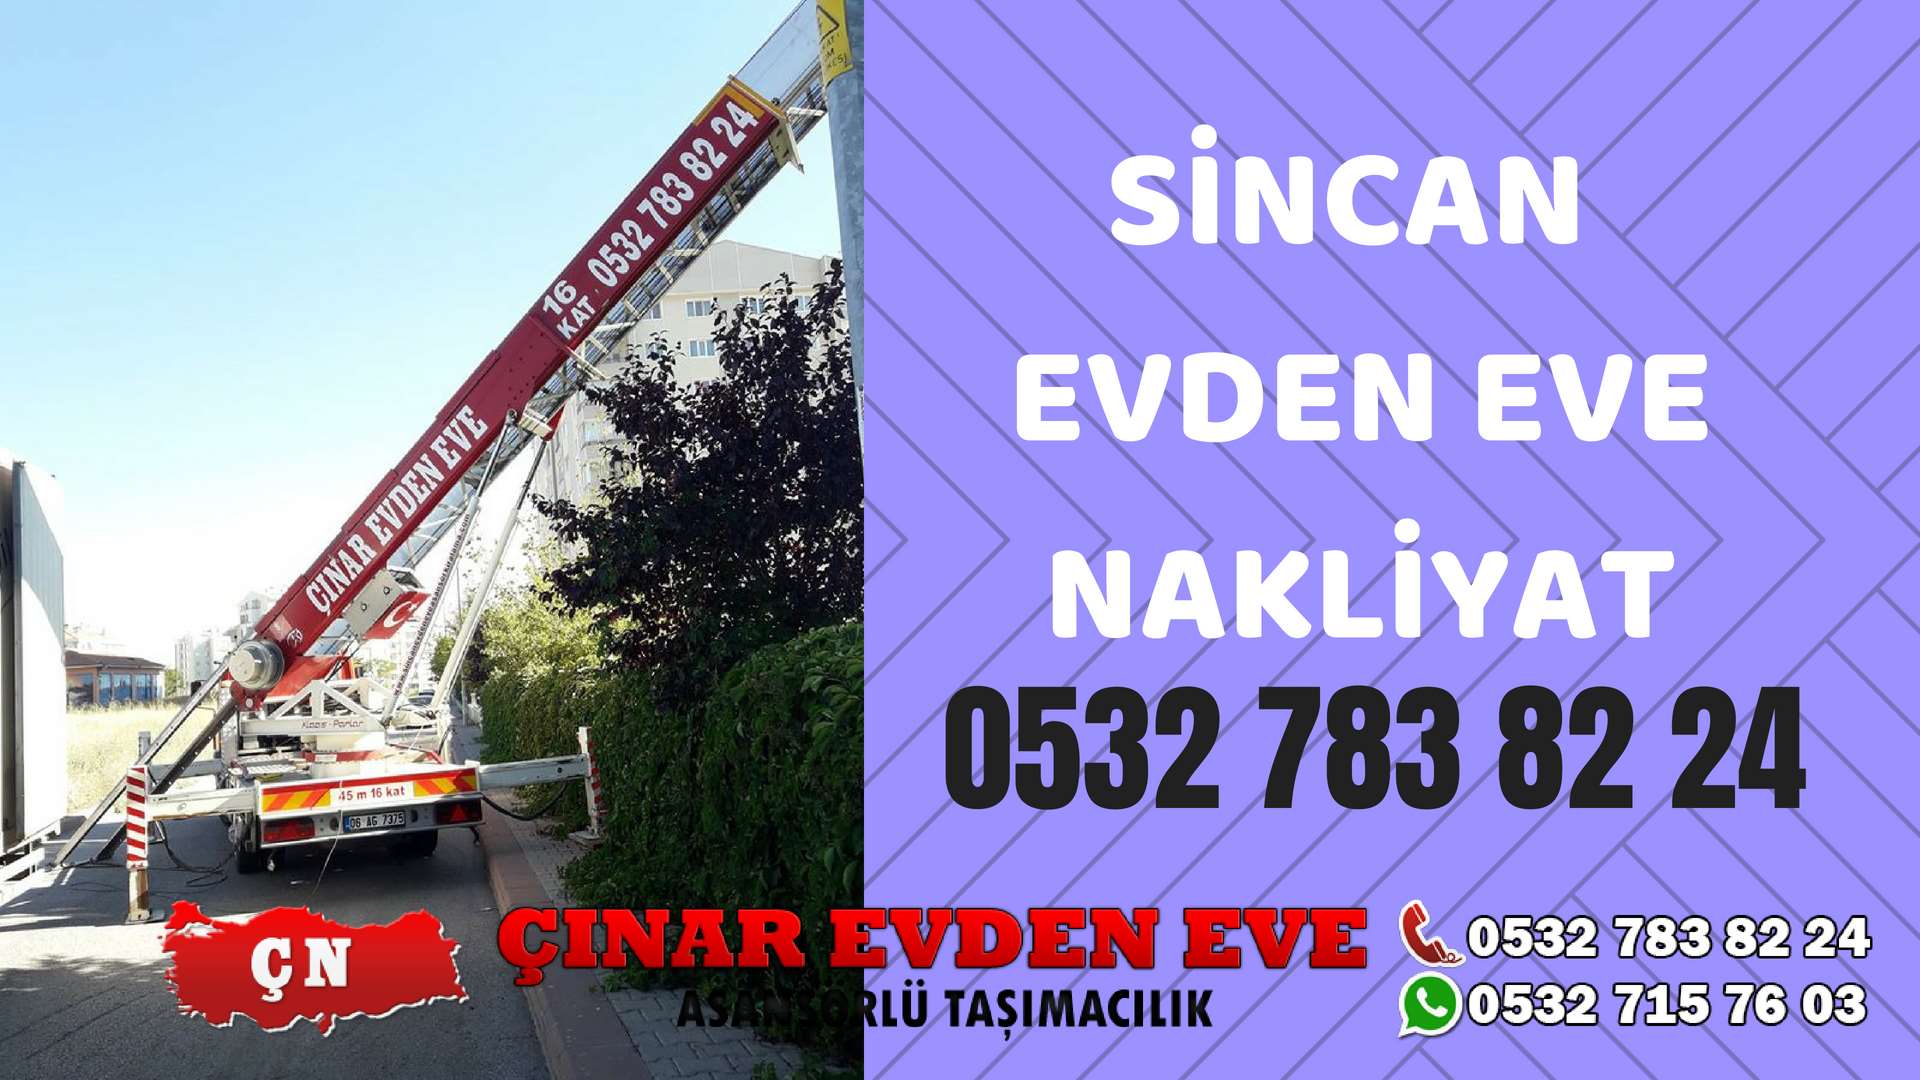 Ankara Kazan Sincan Evden Eve Nakliyat, Asansörlü Taşıma Çınar Nakliyat Sincan 0532 715 76 03